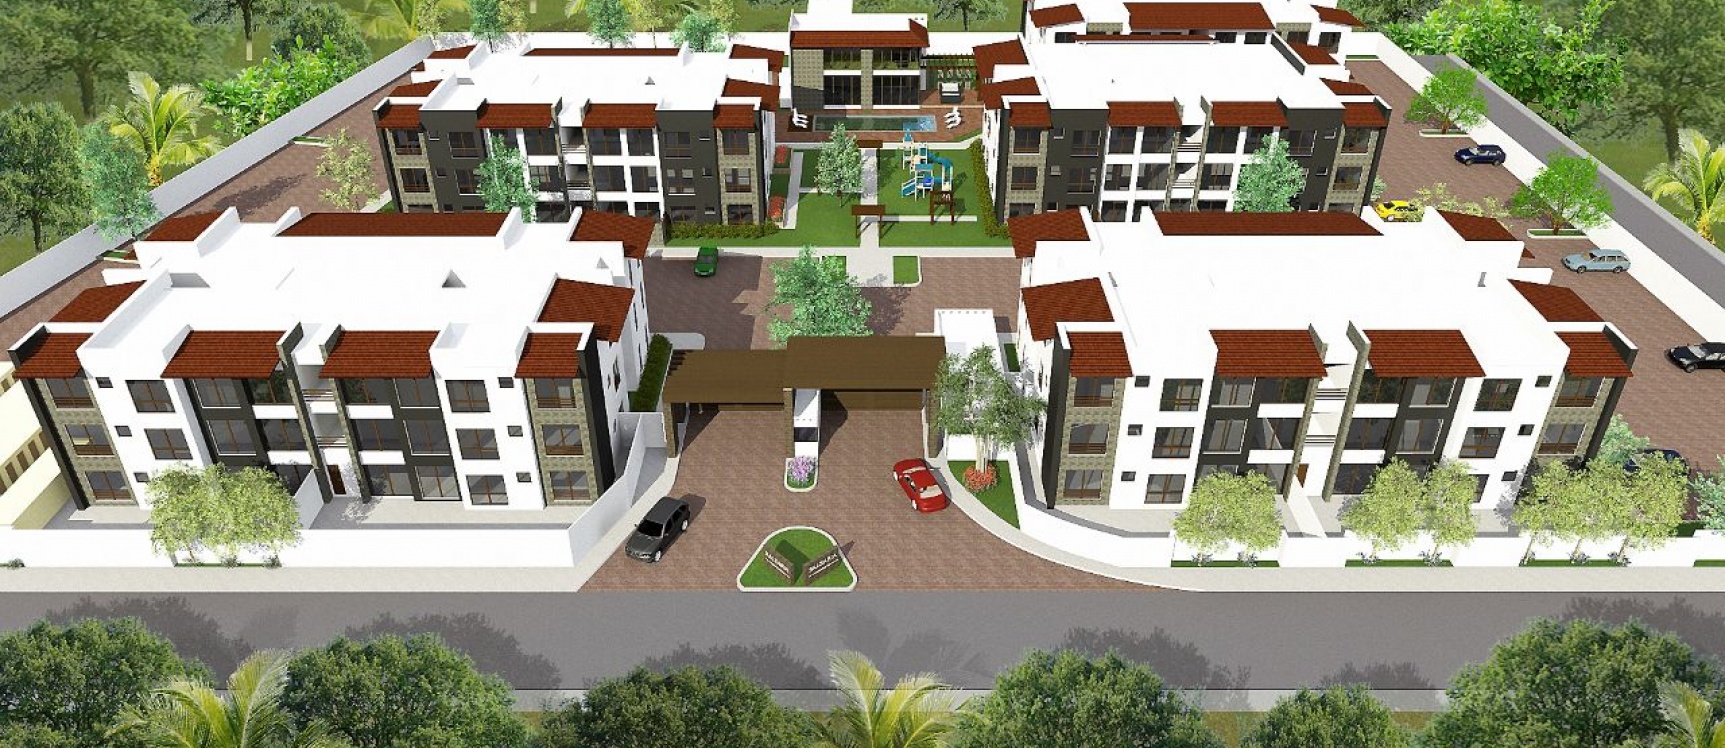 GeoBienes - Departamento en venta en condominio sector Samborondón - Plusvalia Guayaquil Casas de venta y alquiler Inmobiliaria Ecuador